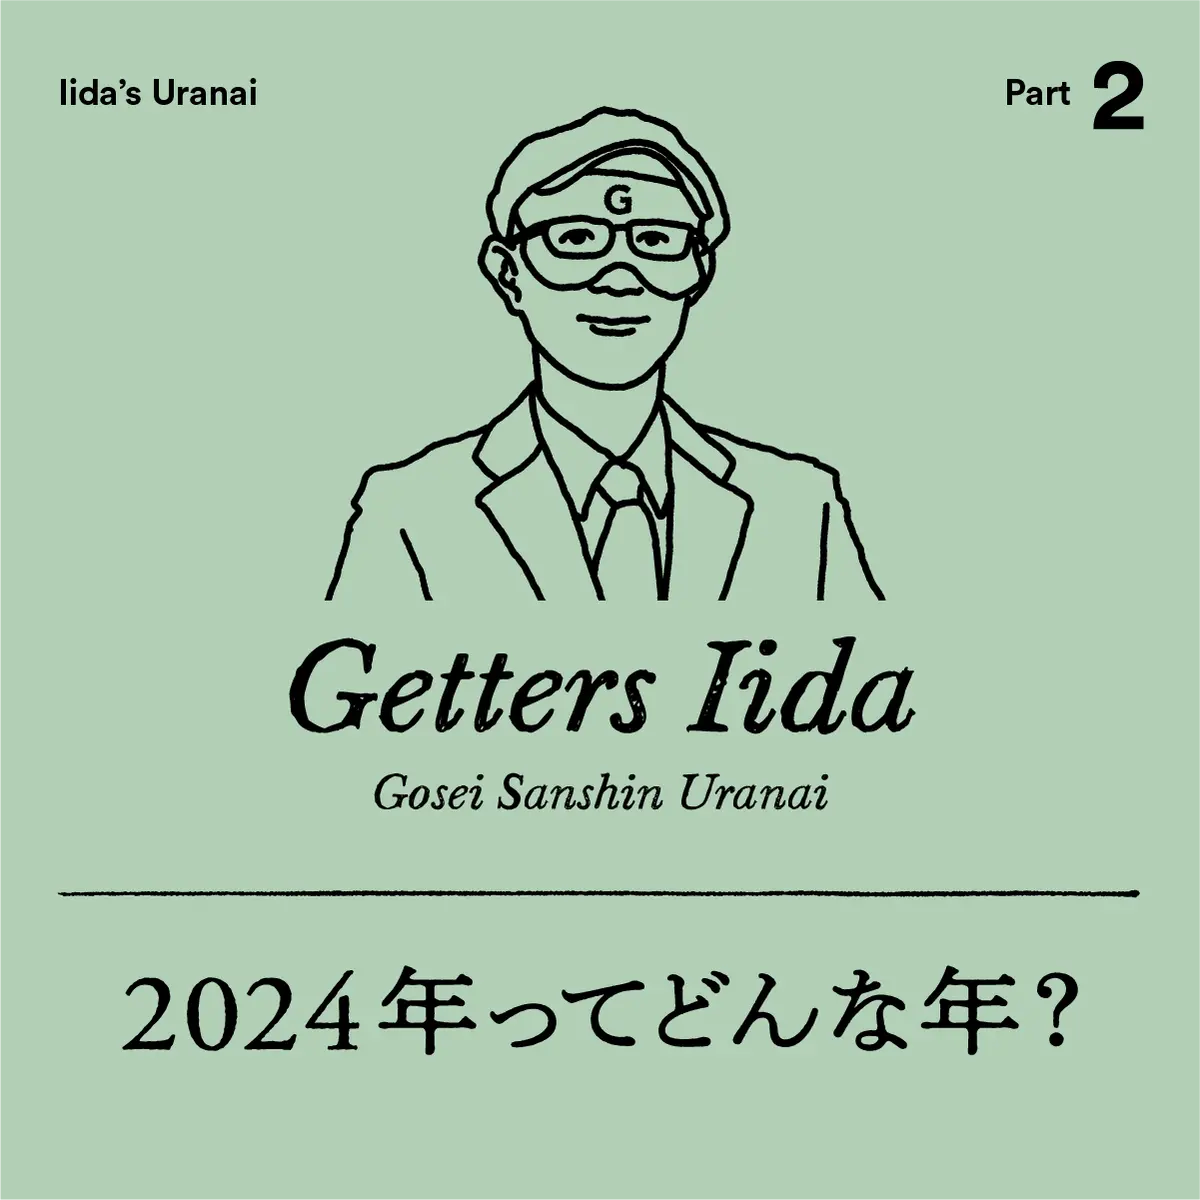 ゲッターズ飯田2024年ってどんな年？